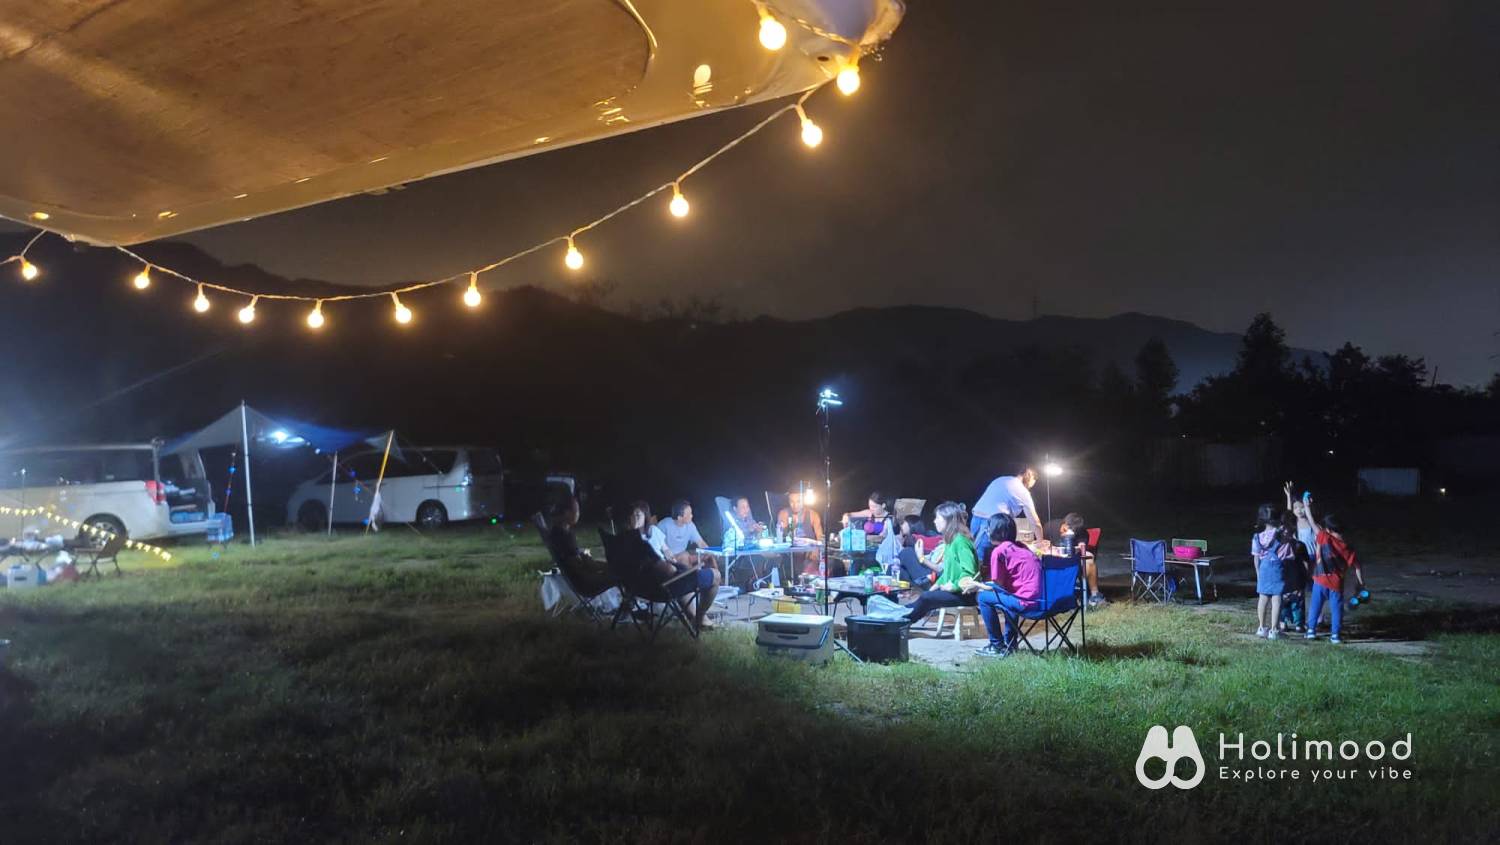 綠行鳥 - 大棠Car Camping + Glamping & 紅葉營地 【大棠露營體驗】 自攜營帳 1